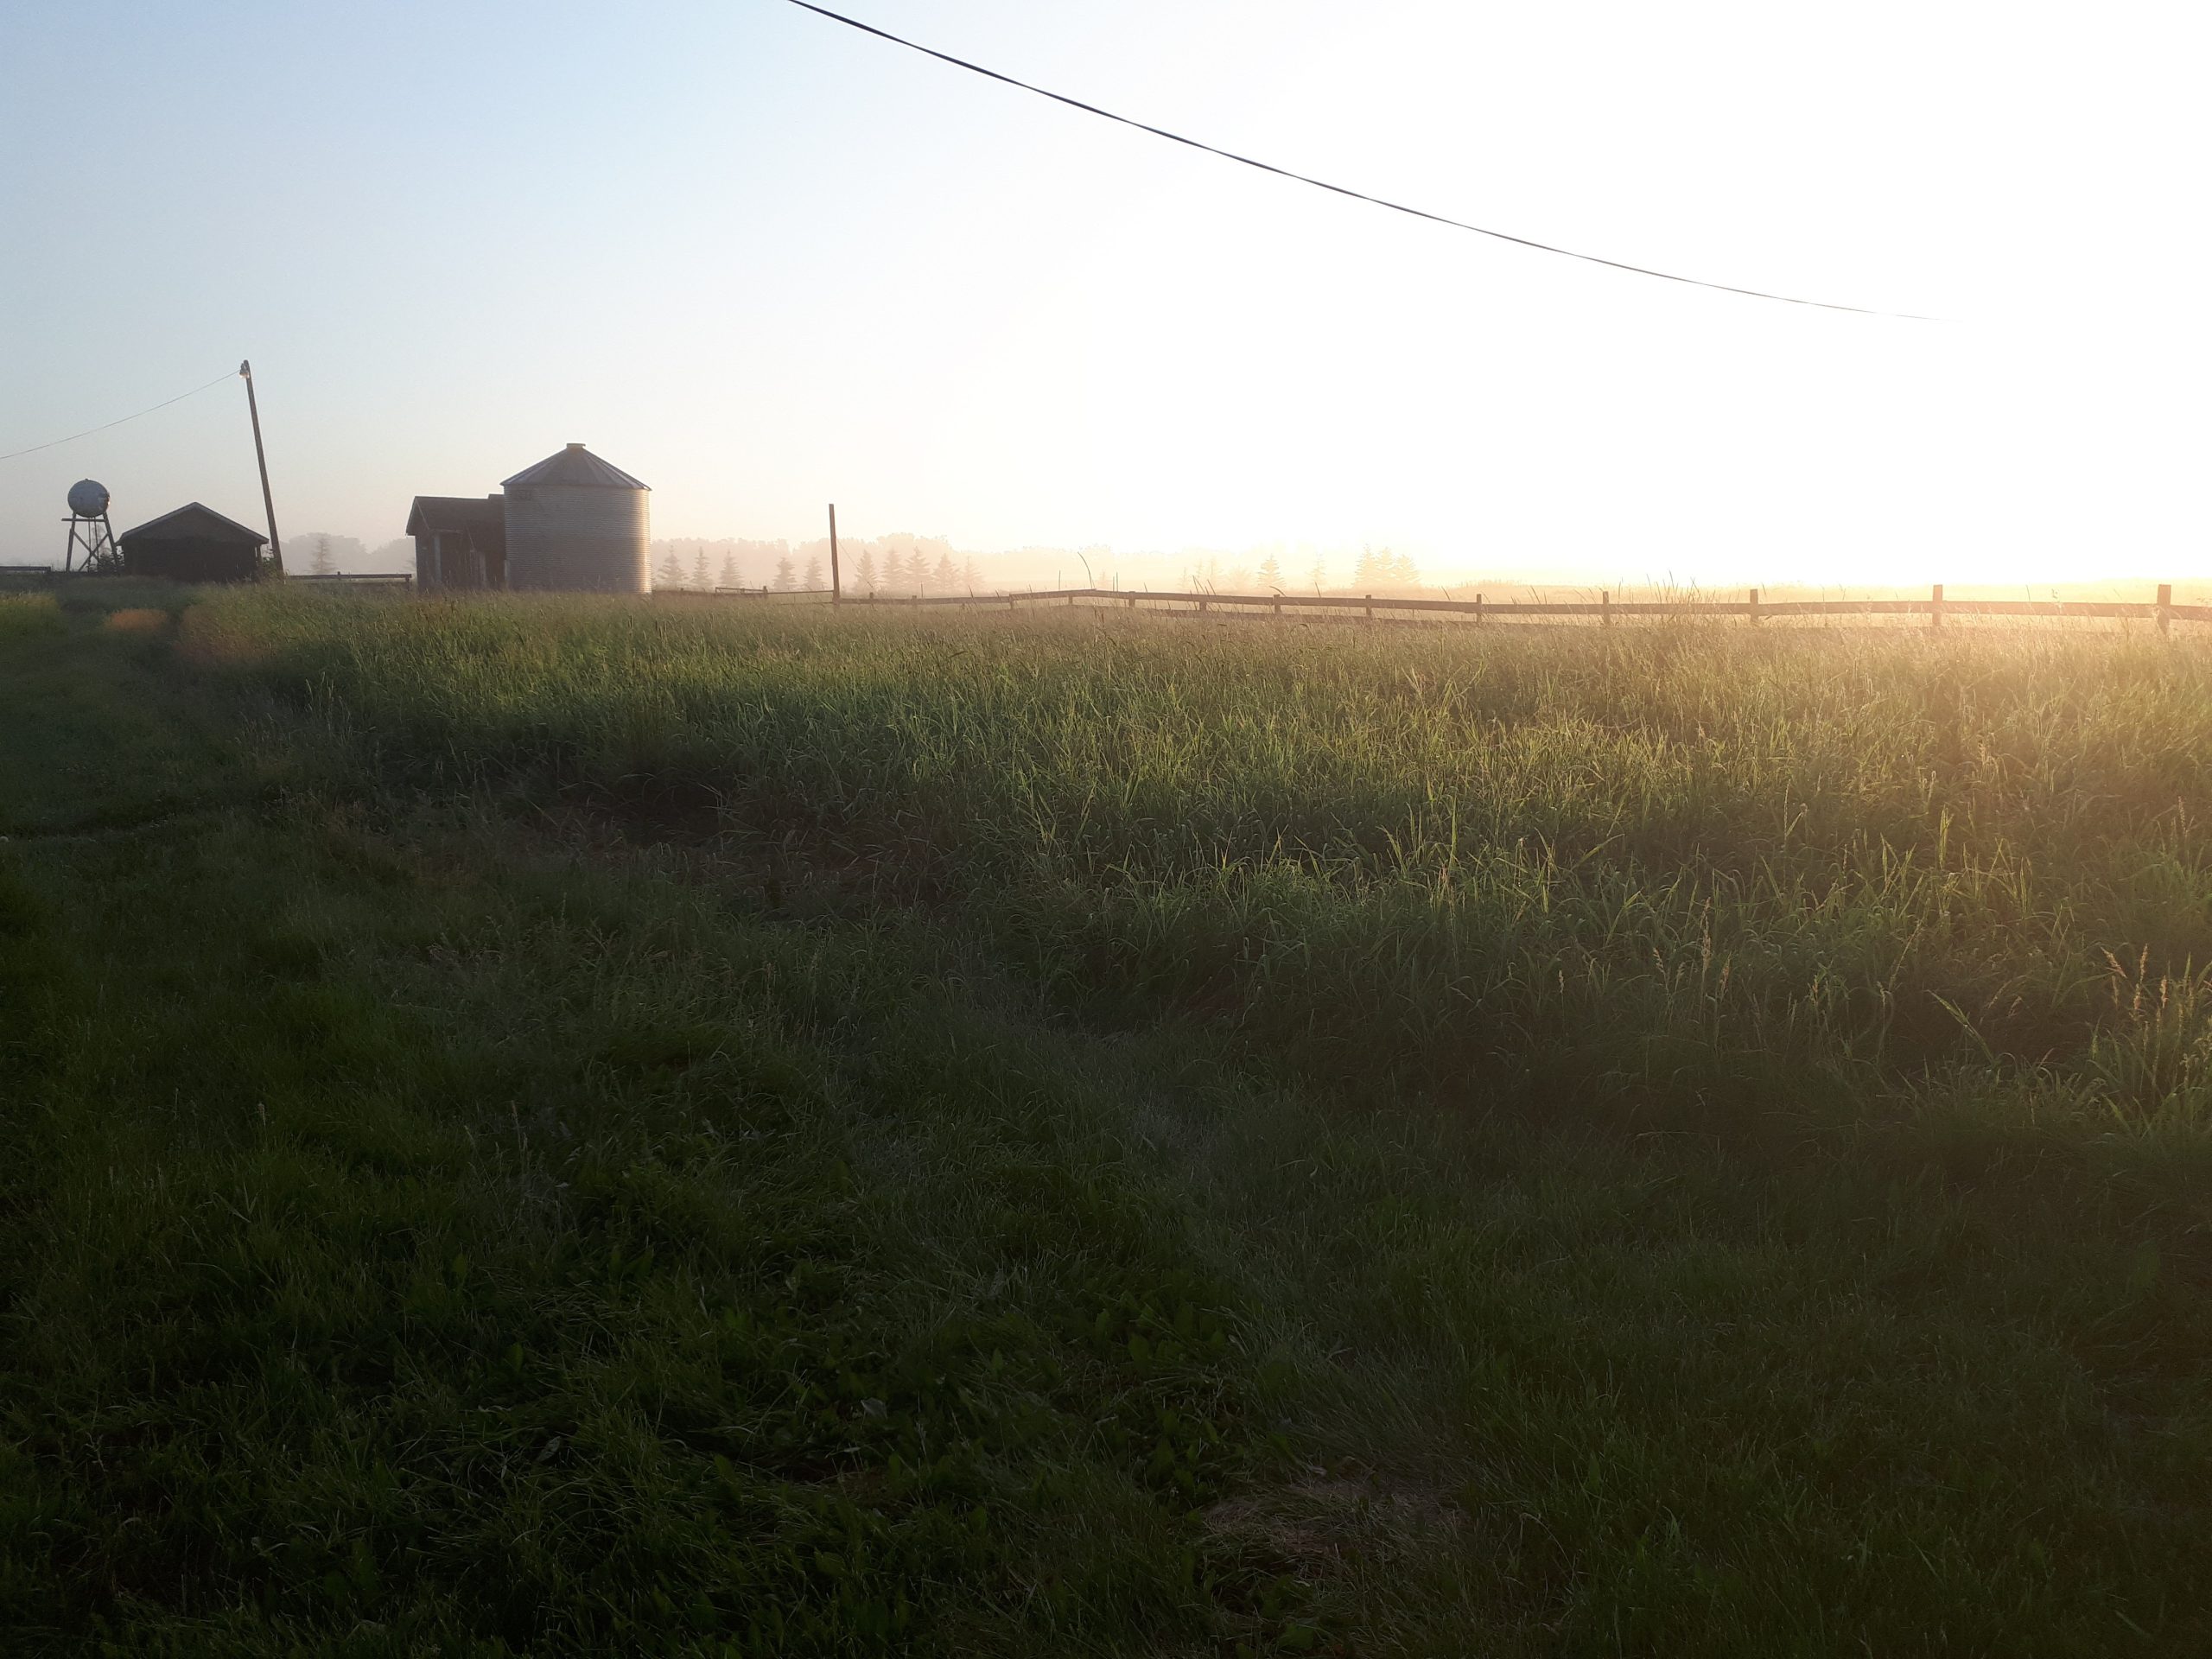 Sunrise on Fairfolk farm across a field of grass and a barn